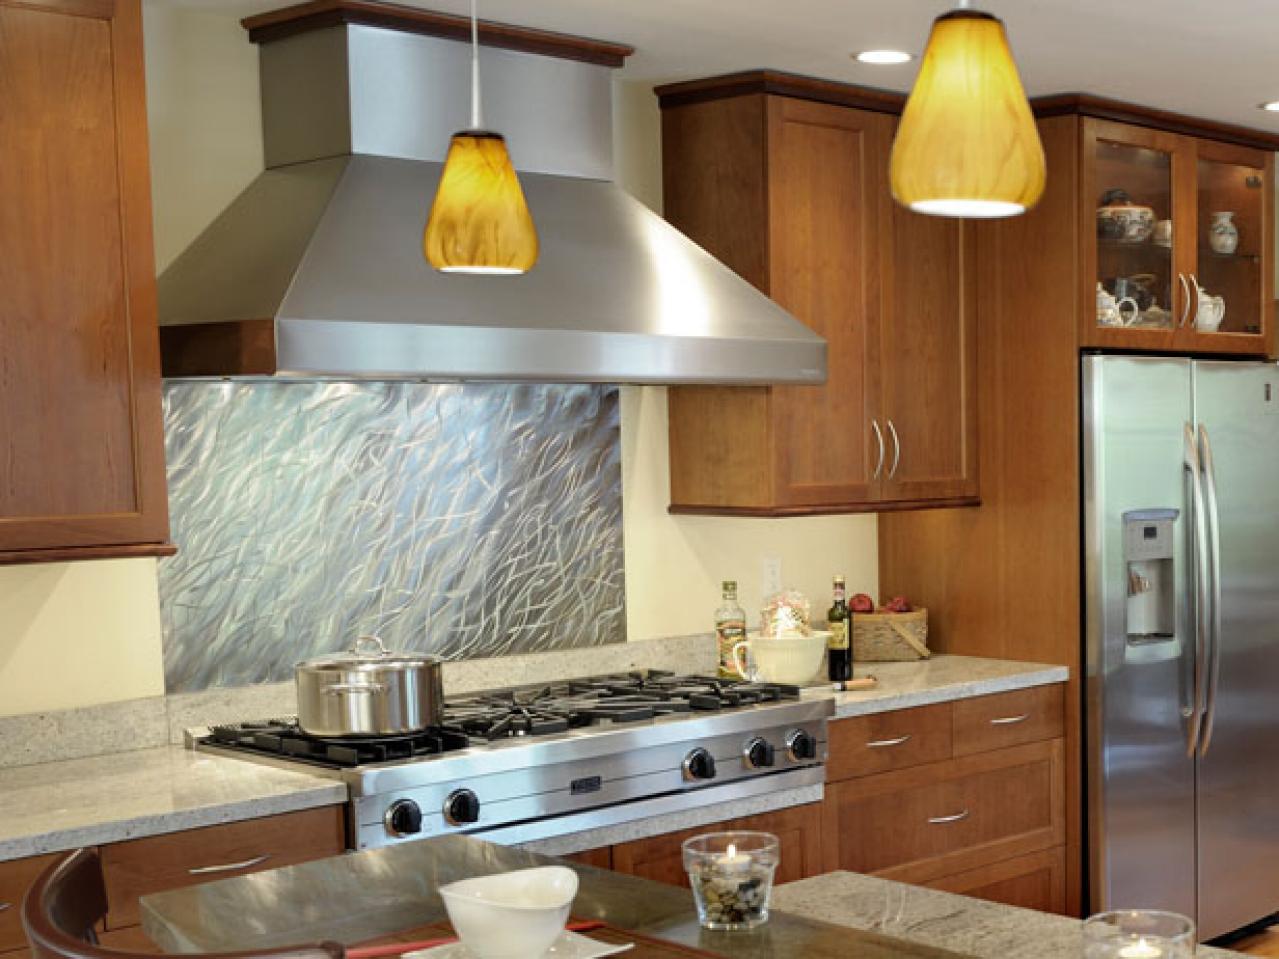 20 Stainless Steel Kitchen Backsplashes Kitchen Ideas & Design with Islands